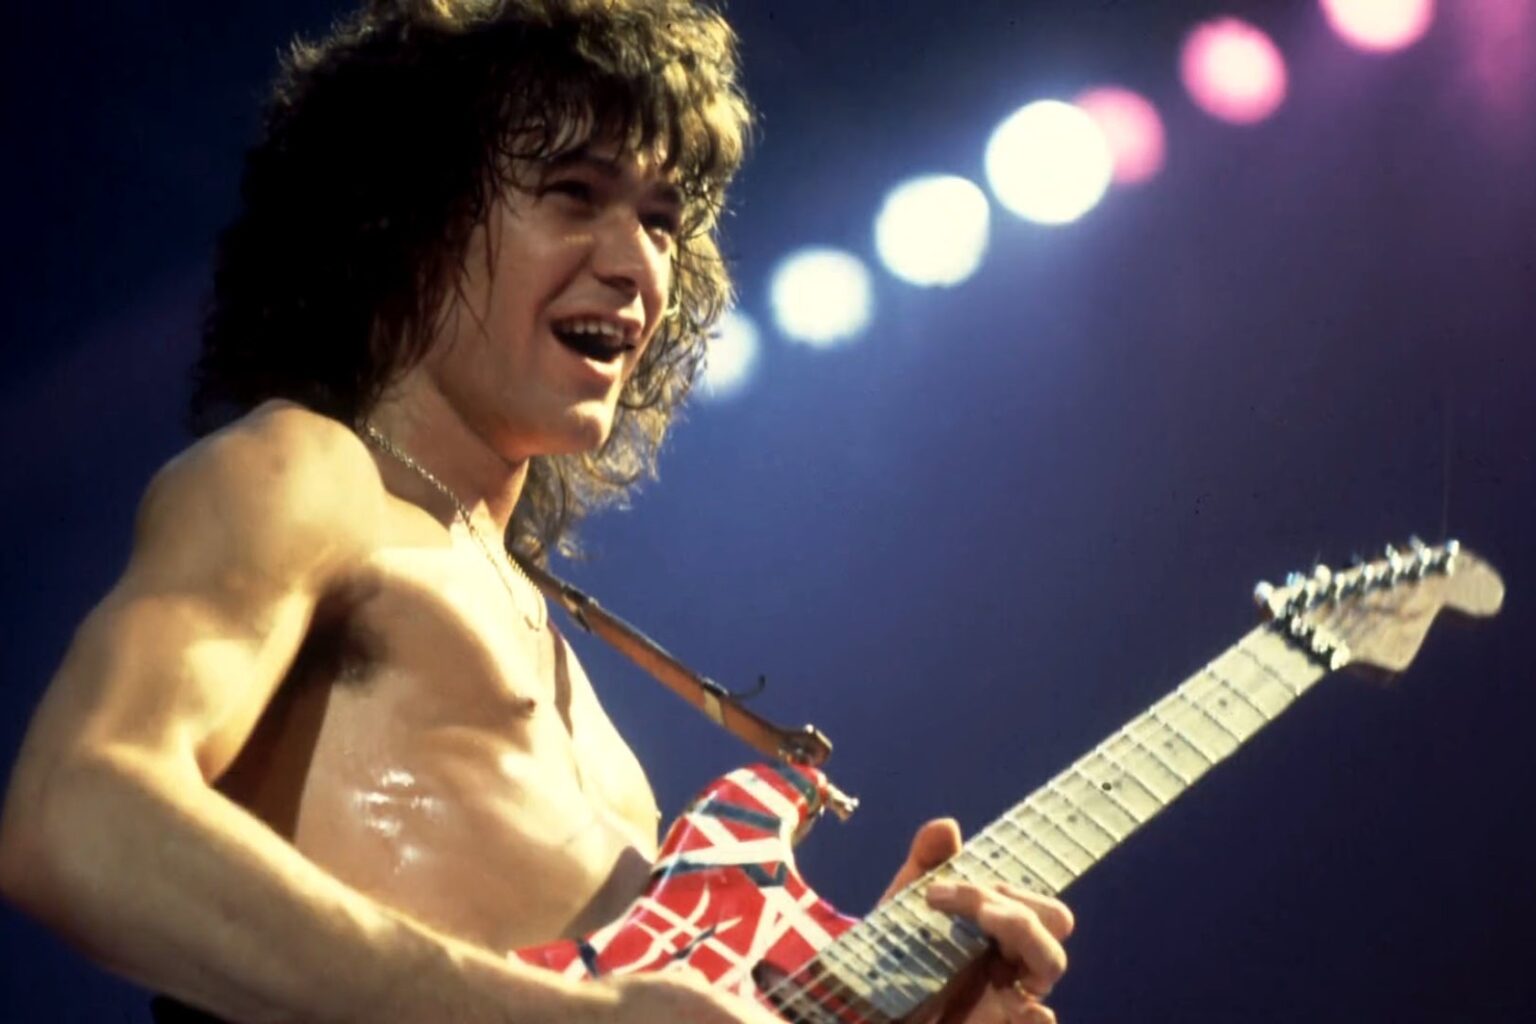 Dieron a conocer el certificado de defunción de Eddie Van Halen. Entérate de la verdadera causa de su muerte.